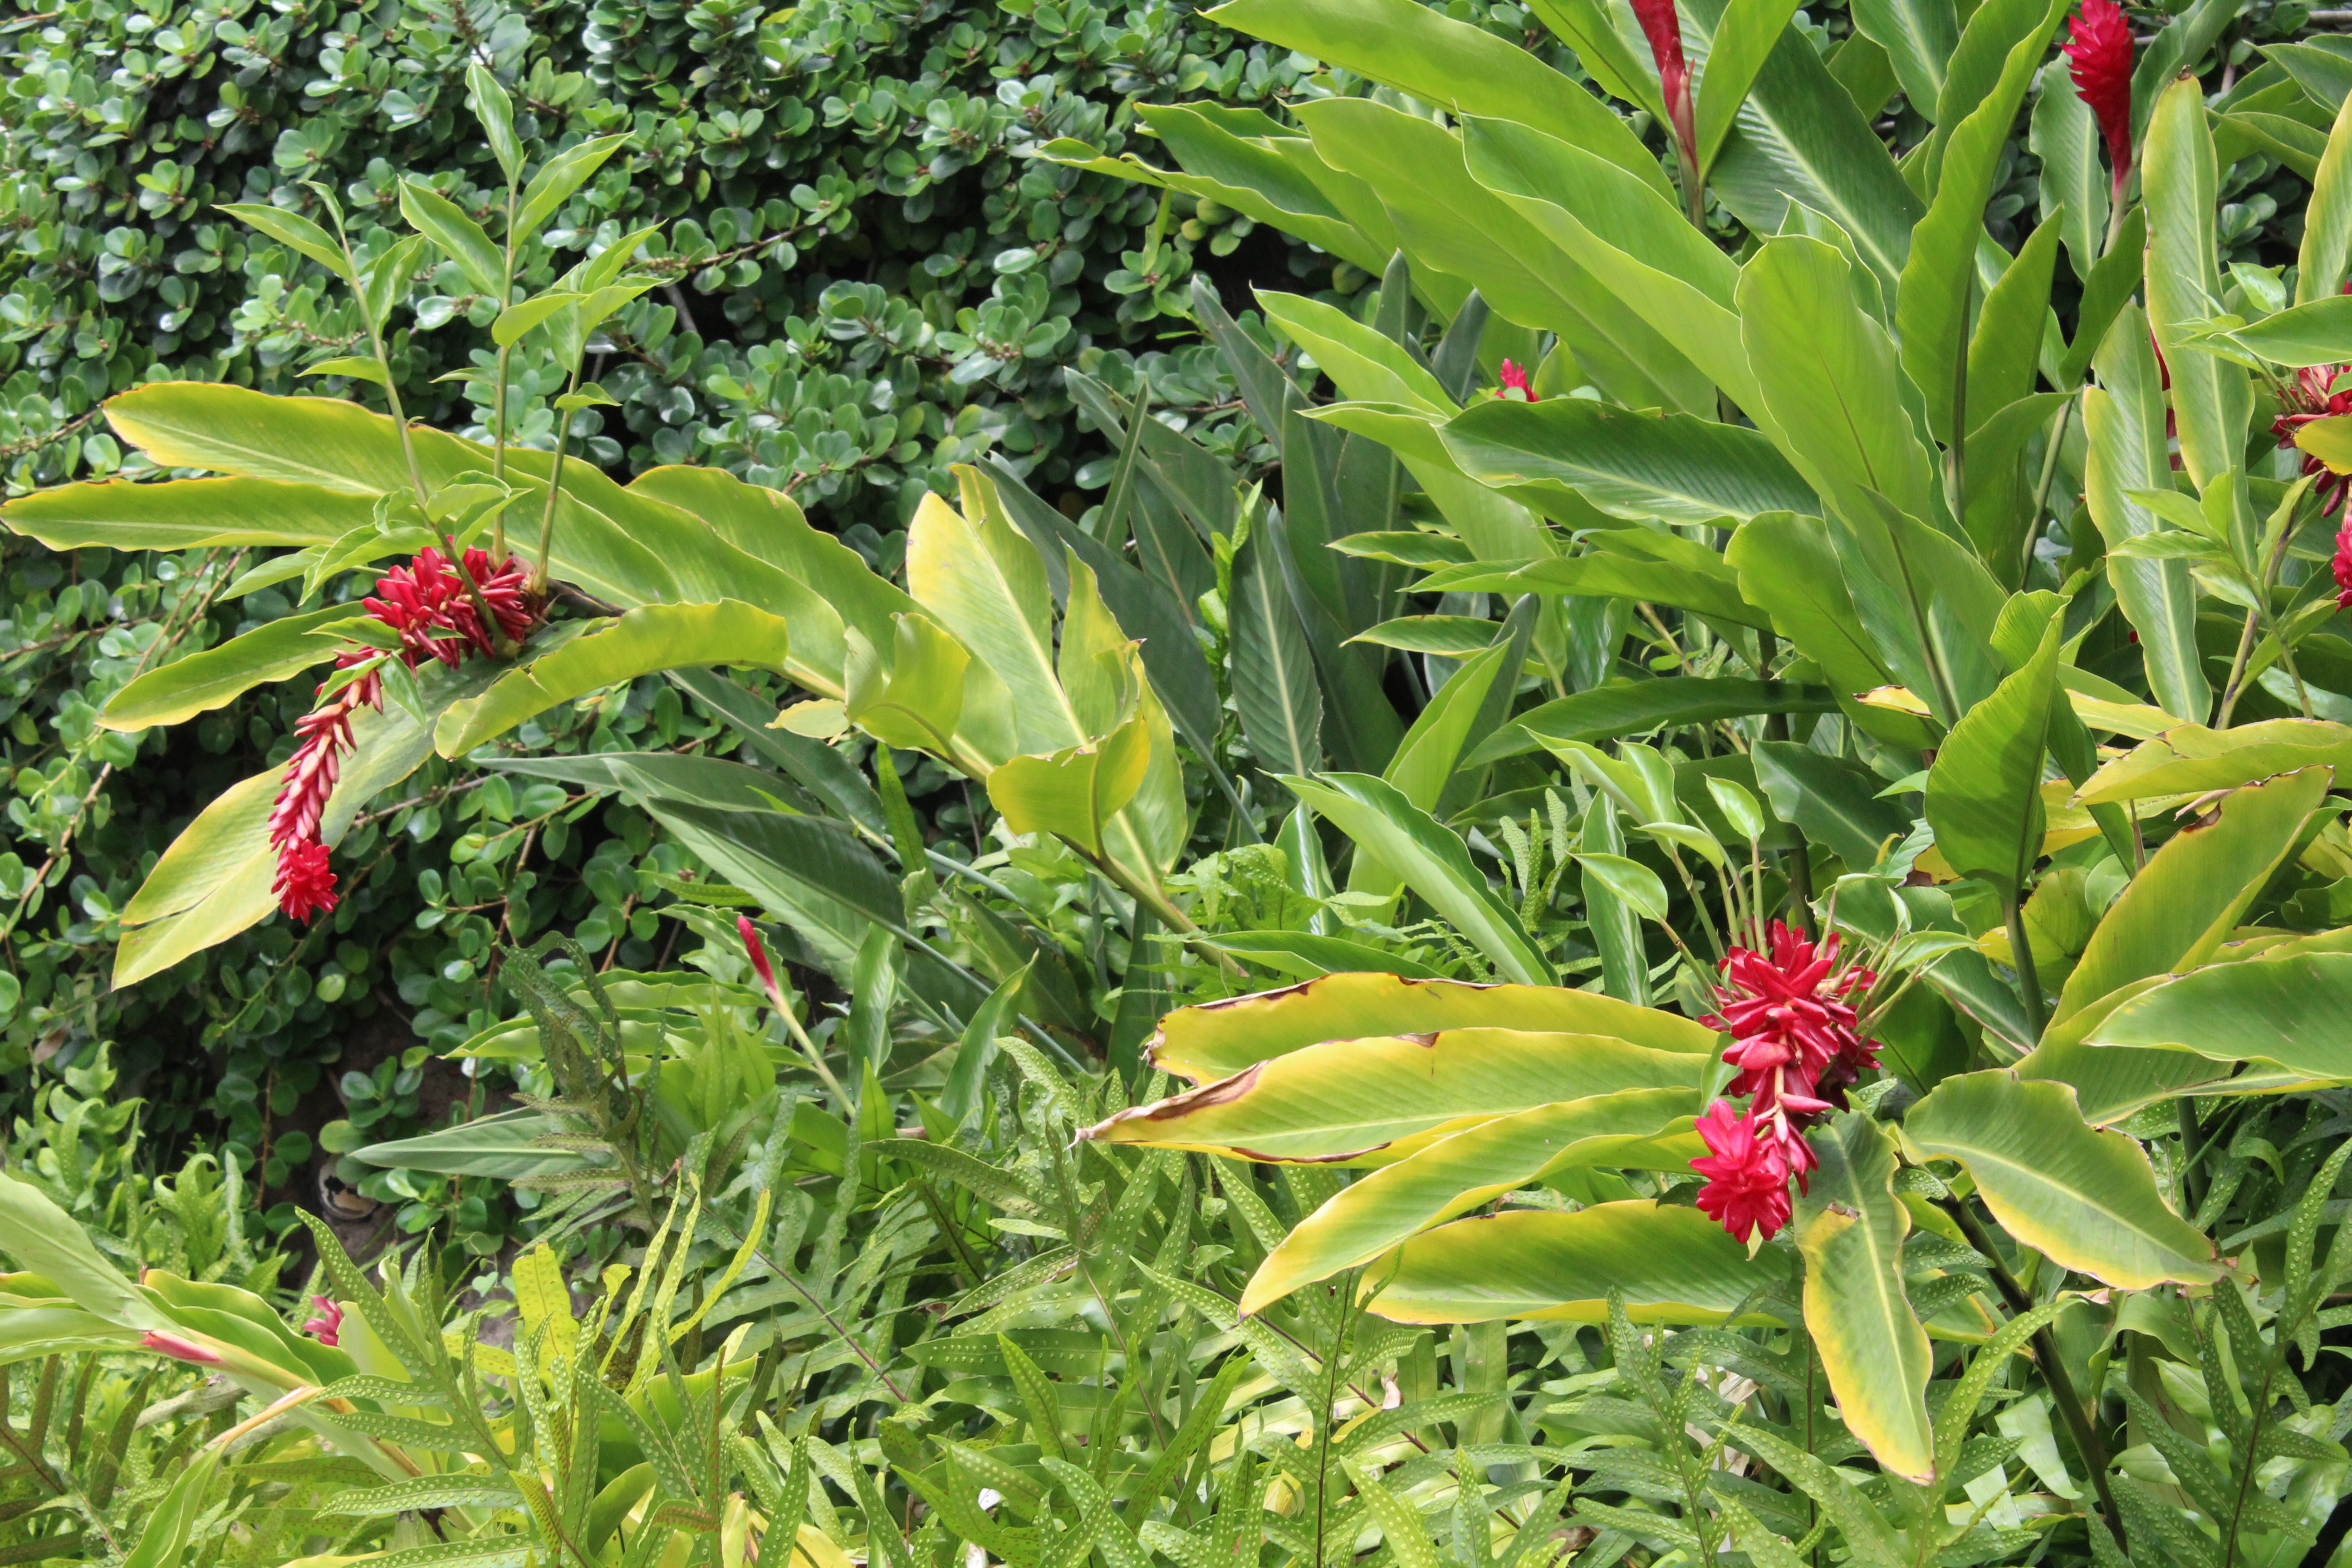 Native Plant of Kauai